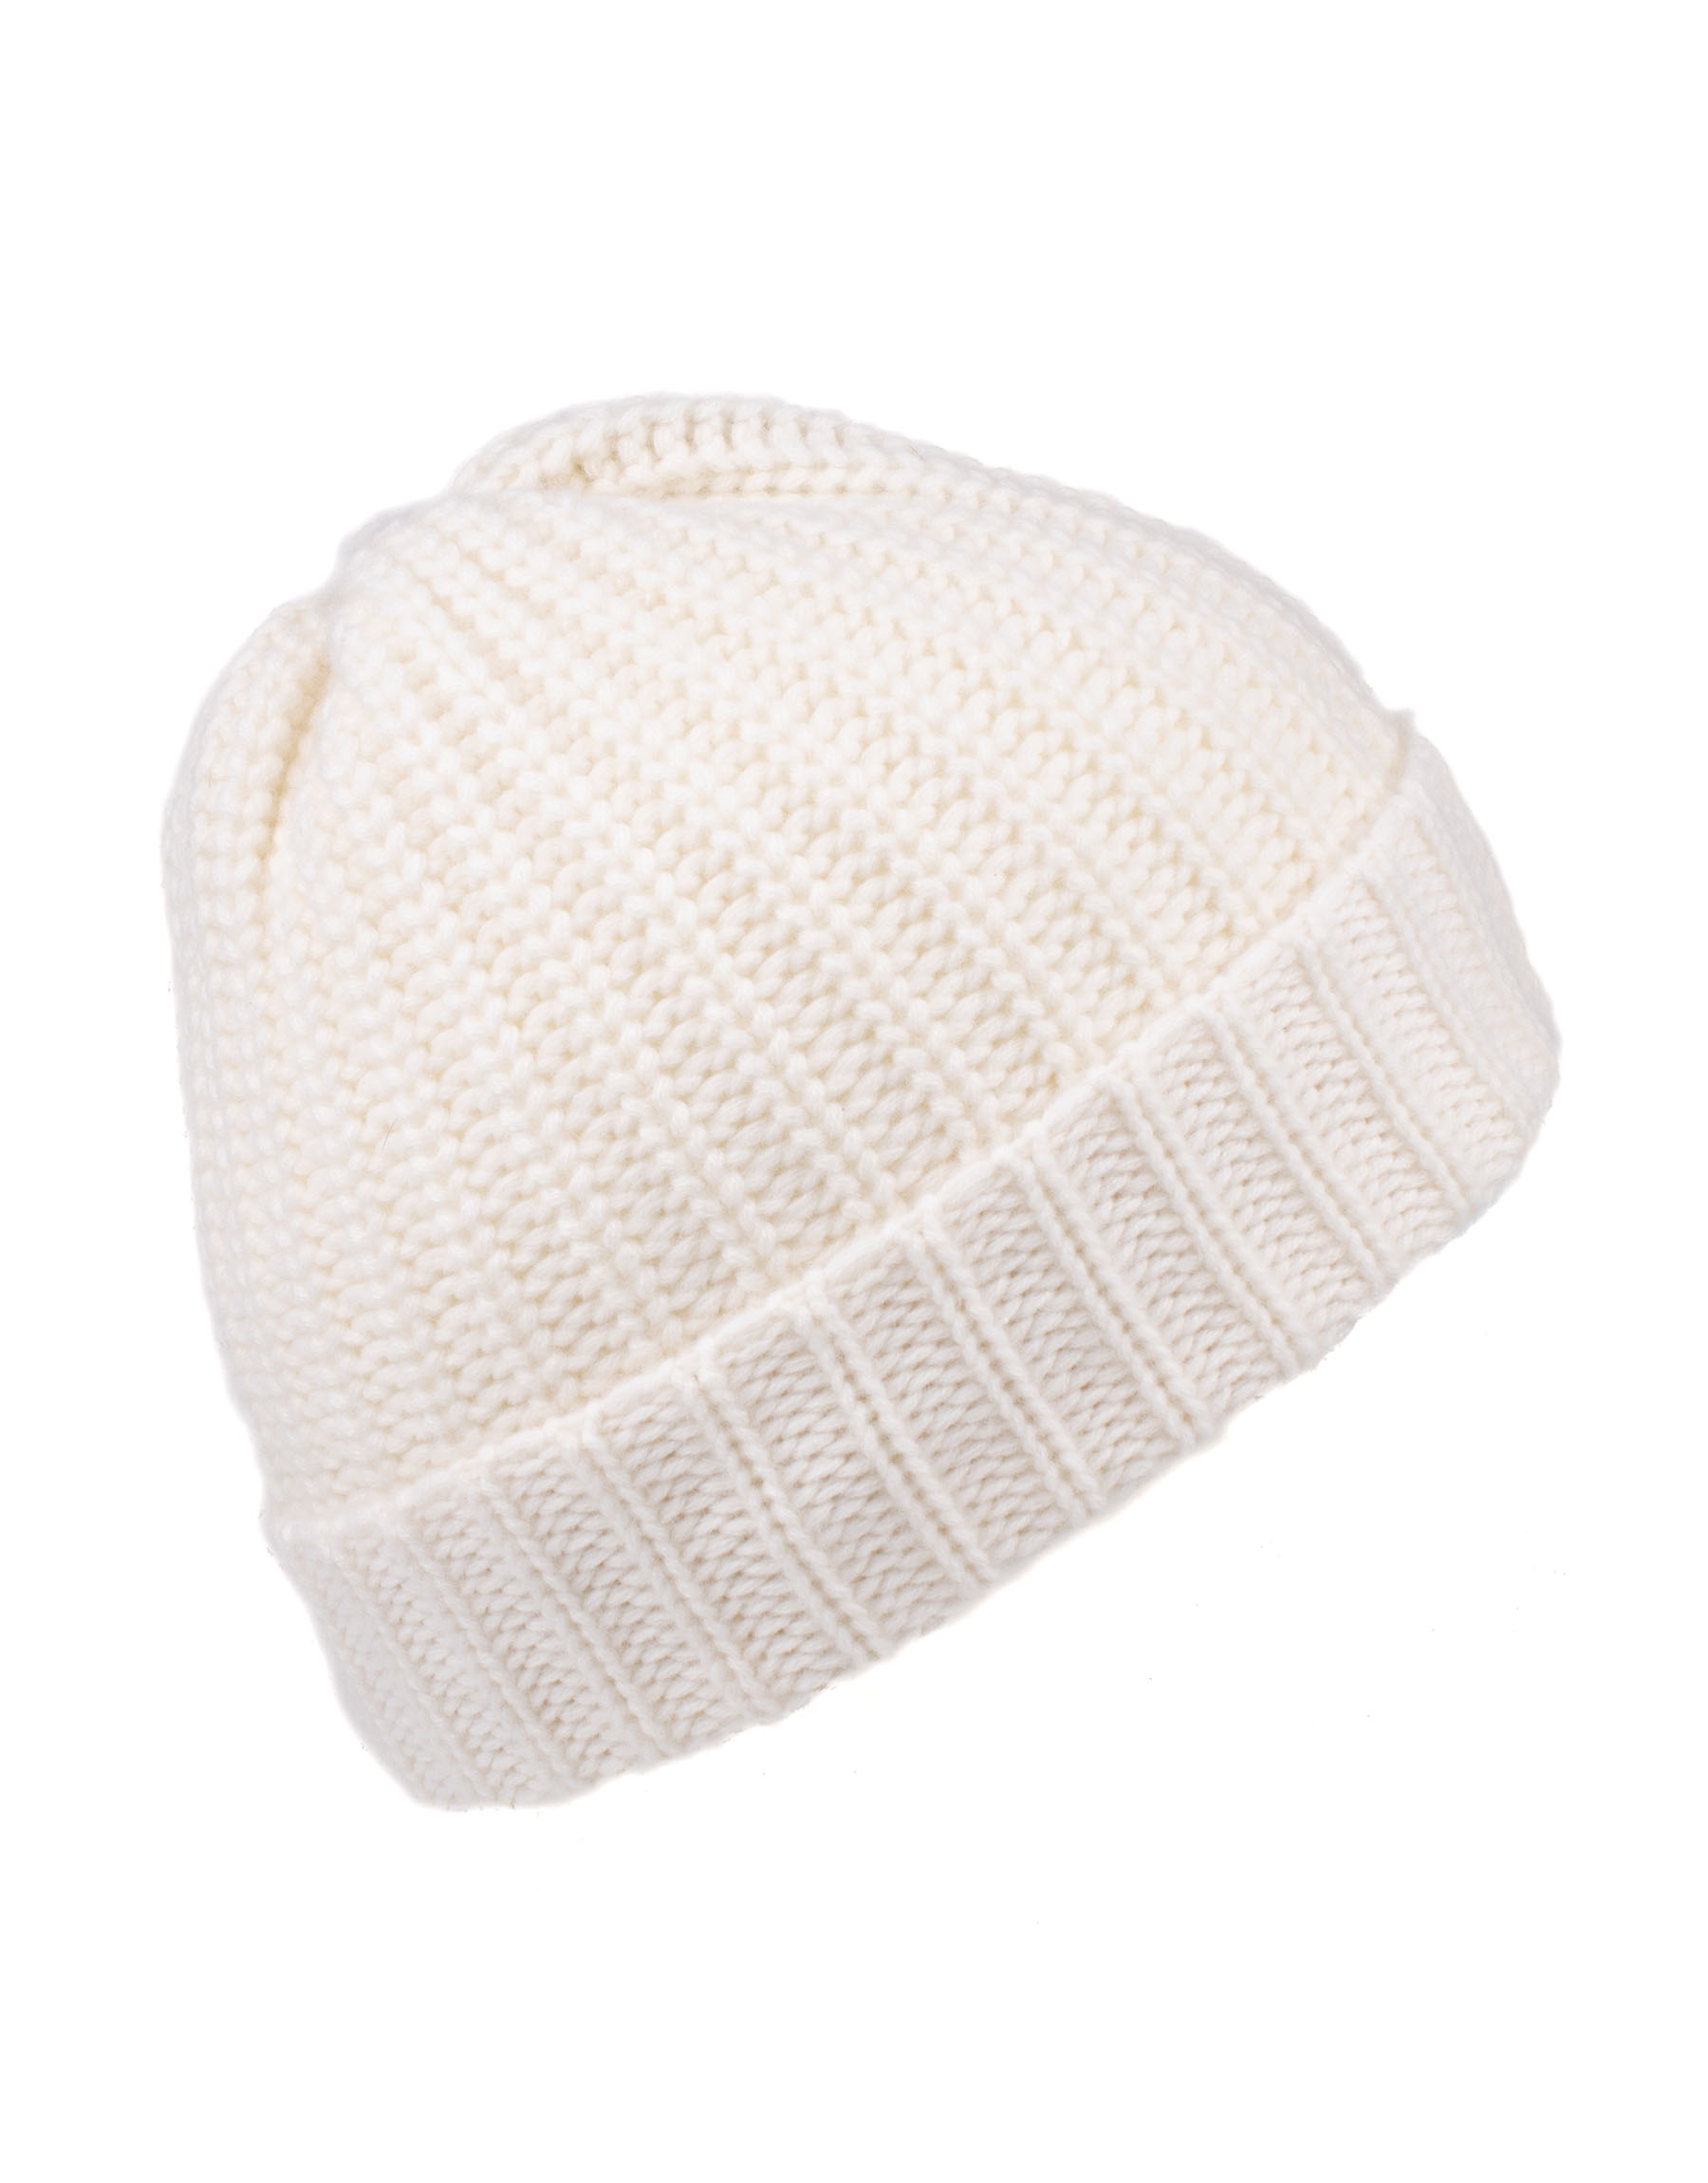 cappello-cuffia-cashmere-cachemir-maglia-magliainglese-inglese-perlata-maglia-perlata-mezza-maglia-inglese-mezzamagliainglese-bianco